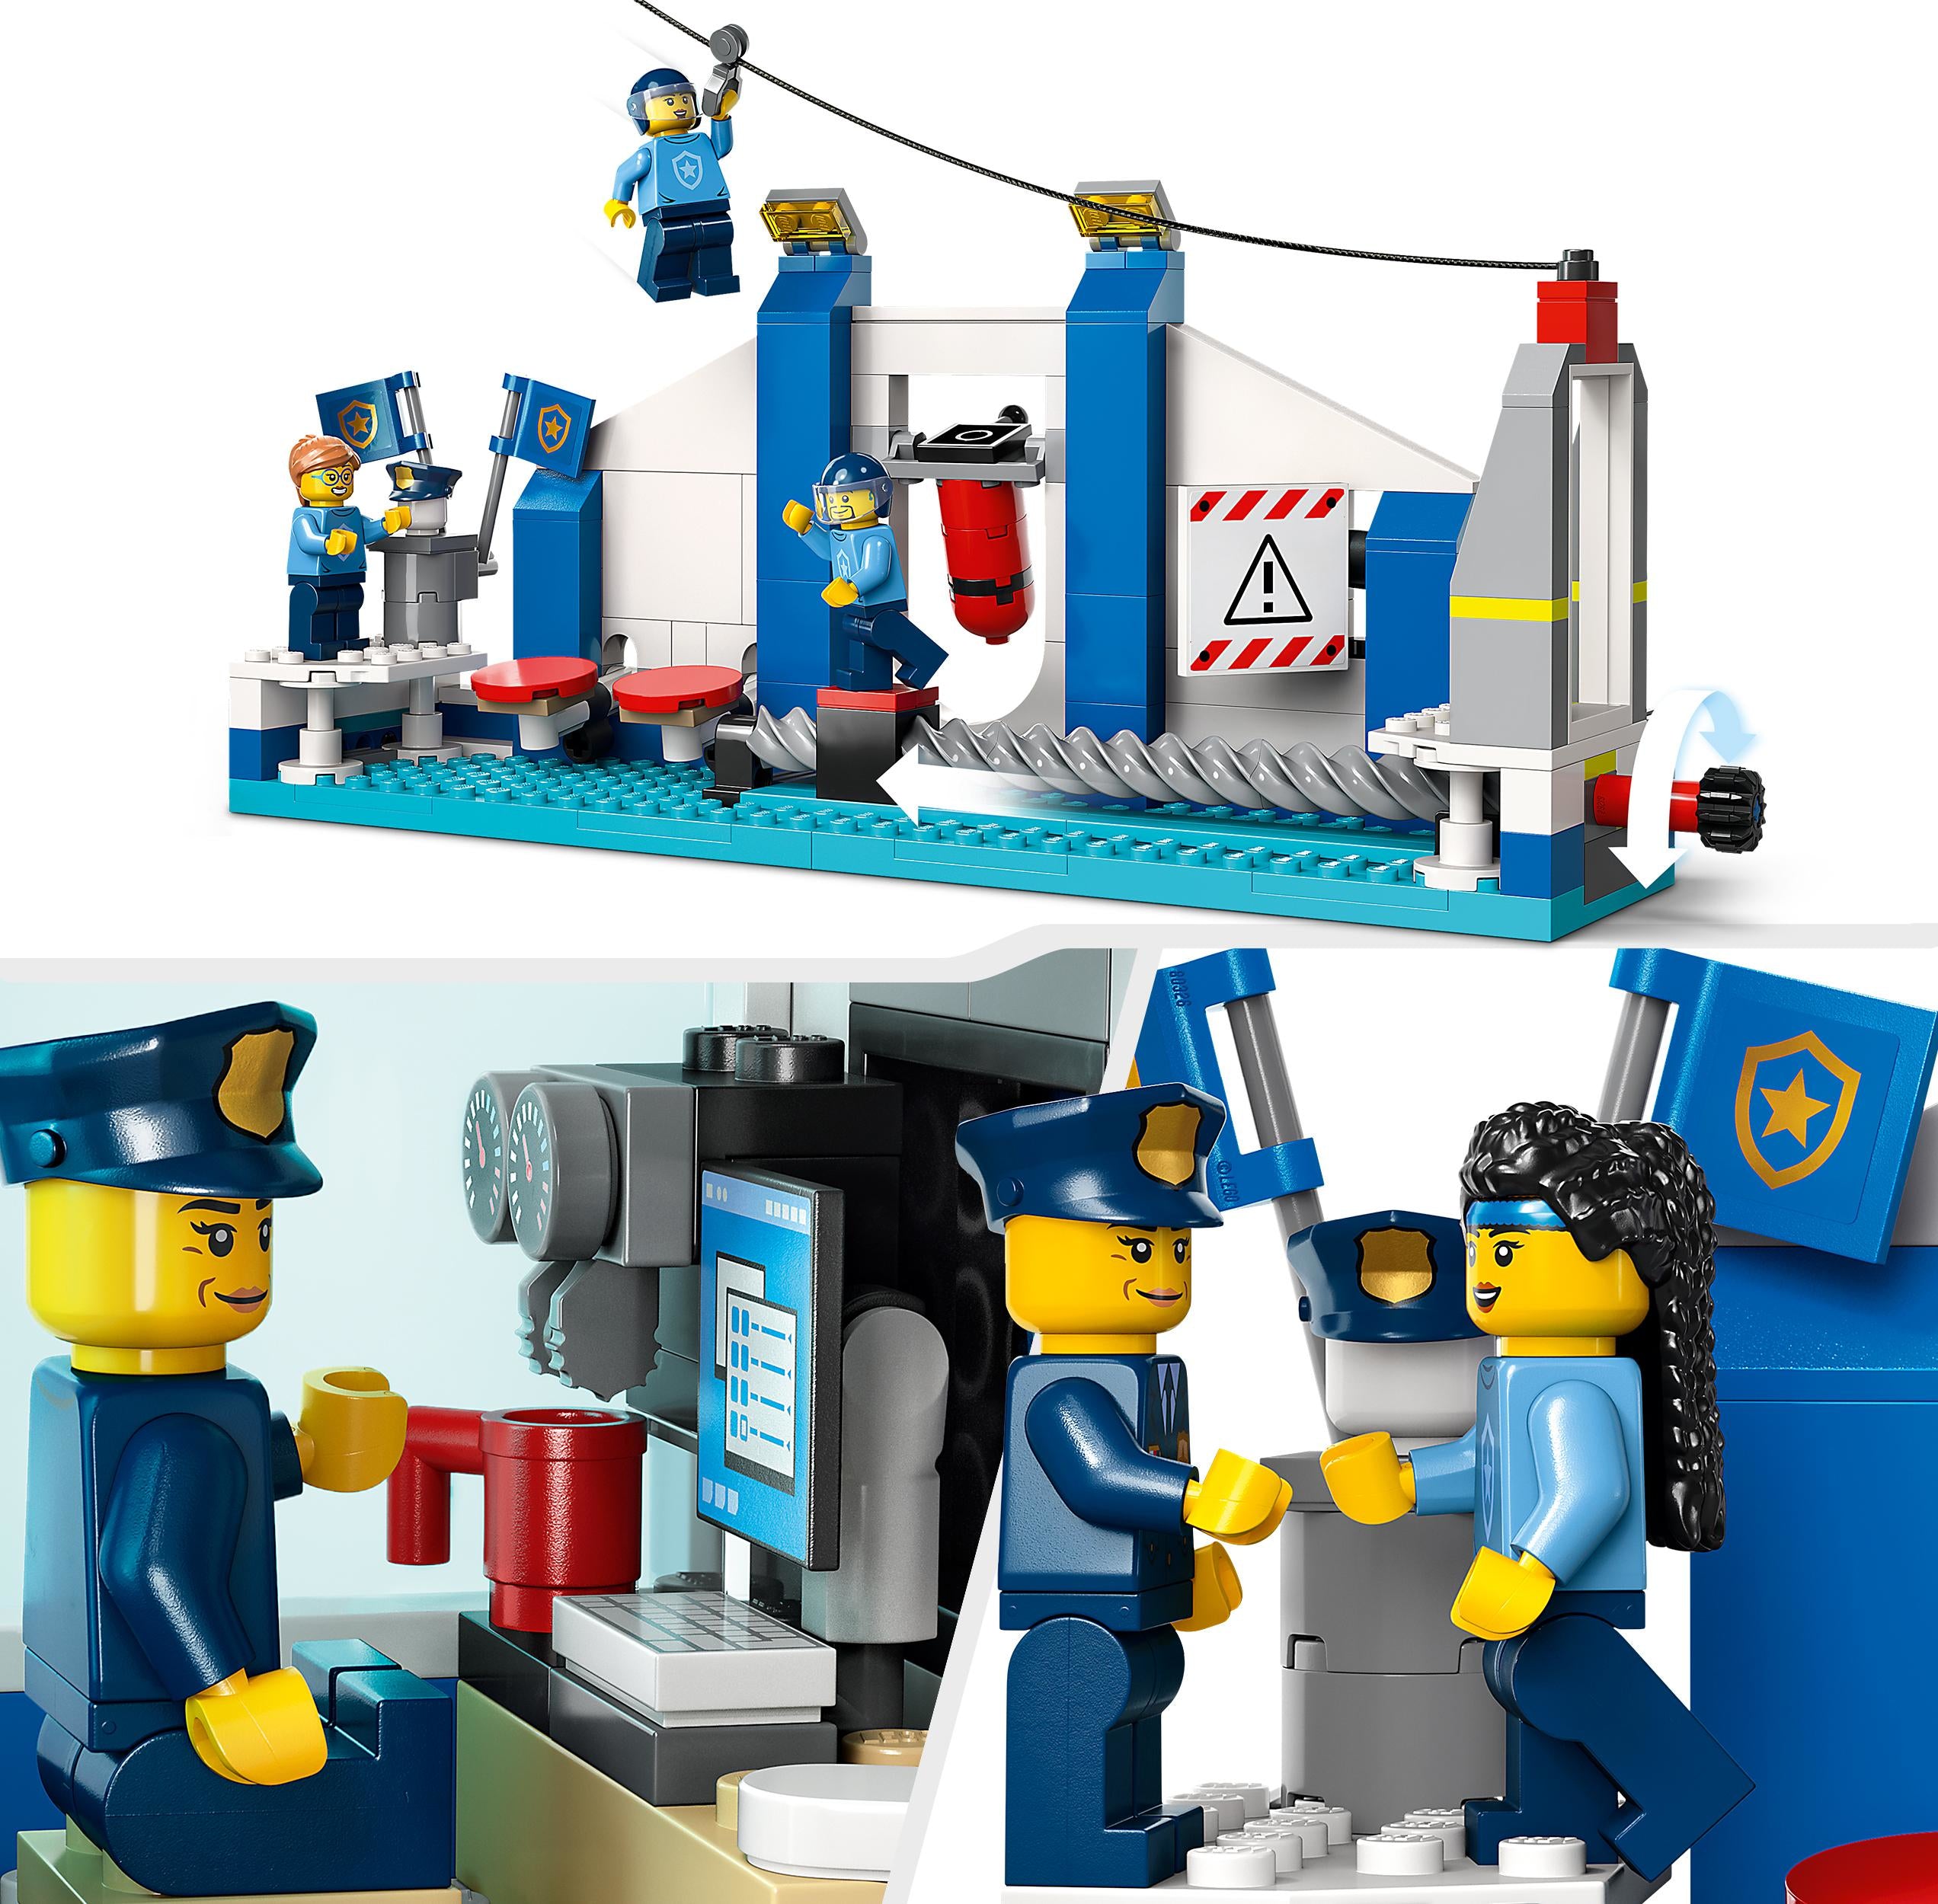 60372 LEGO City Police - Accademia di addestramento della polizia